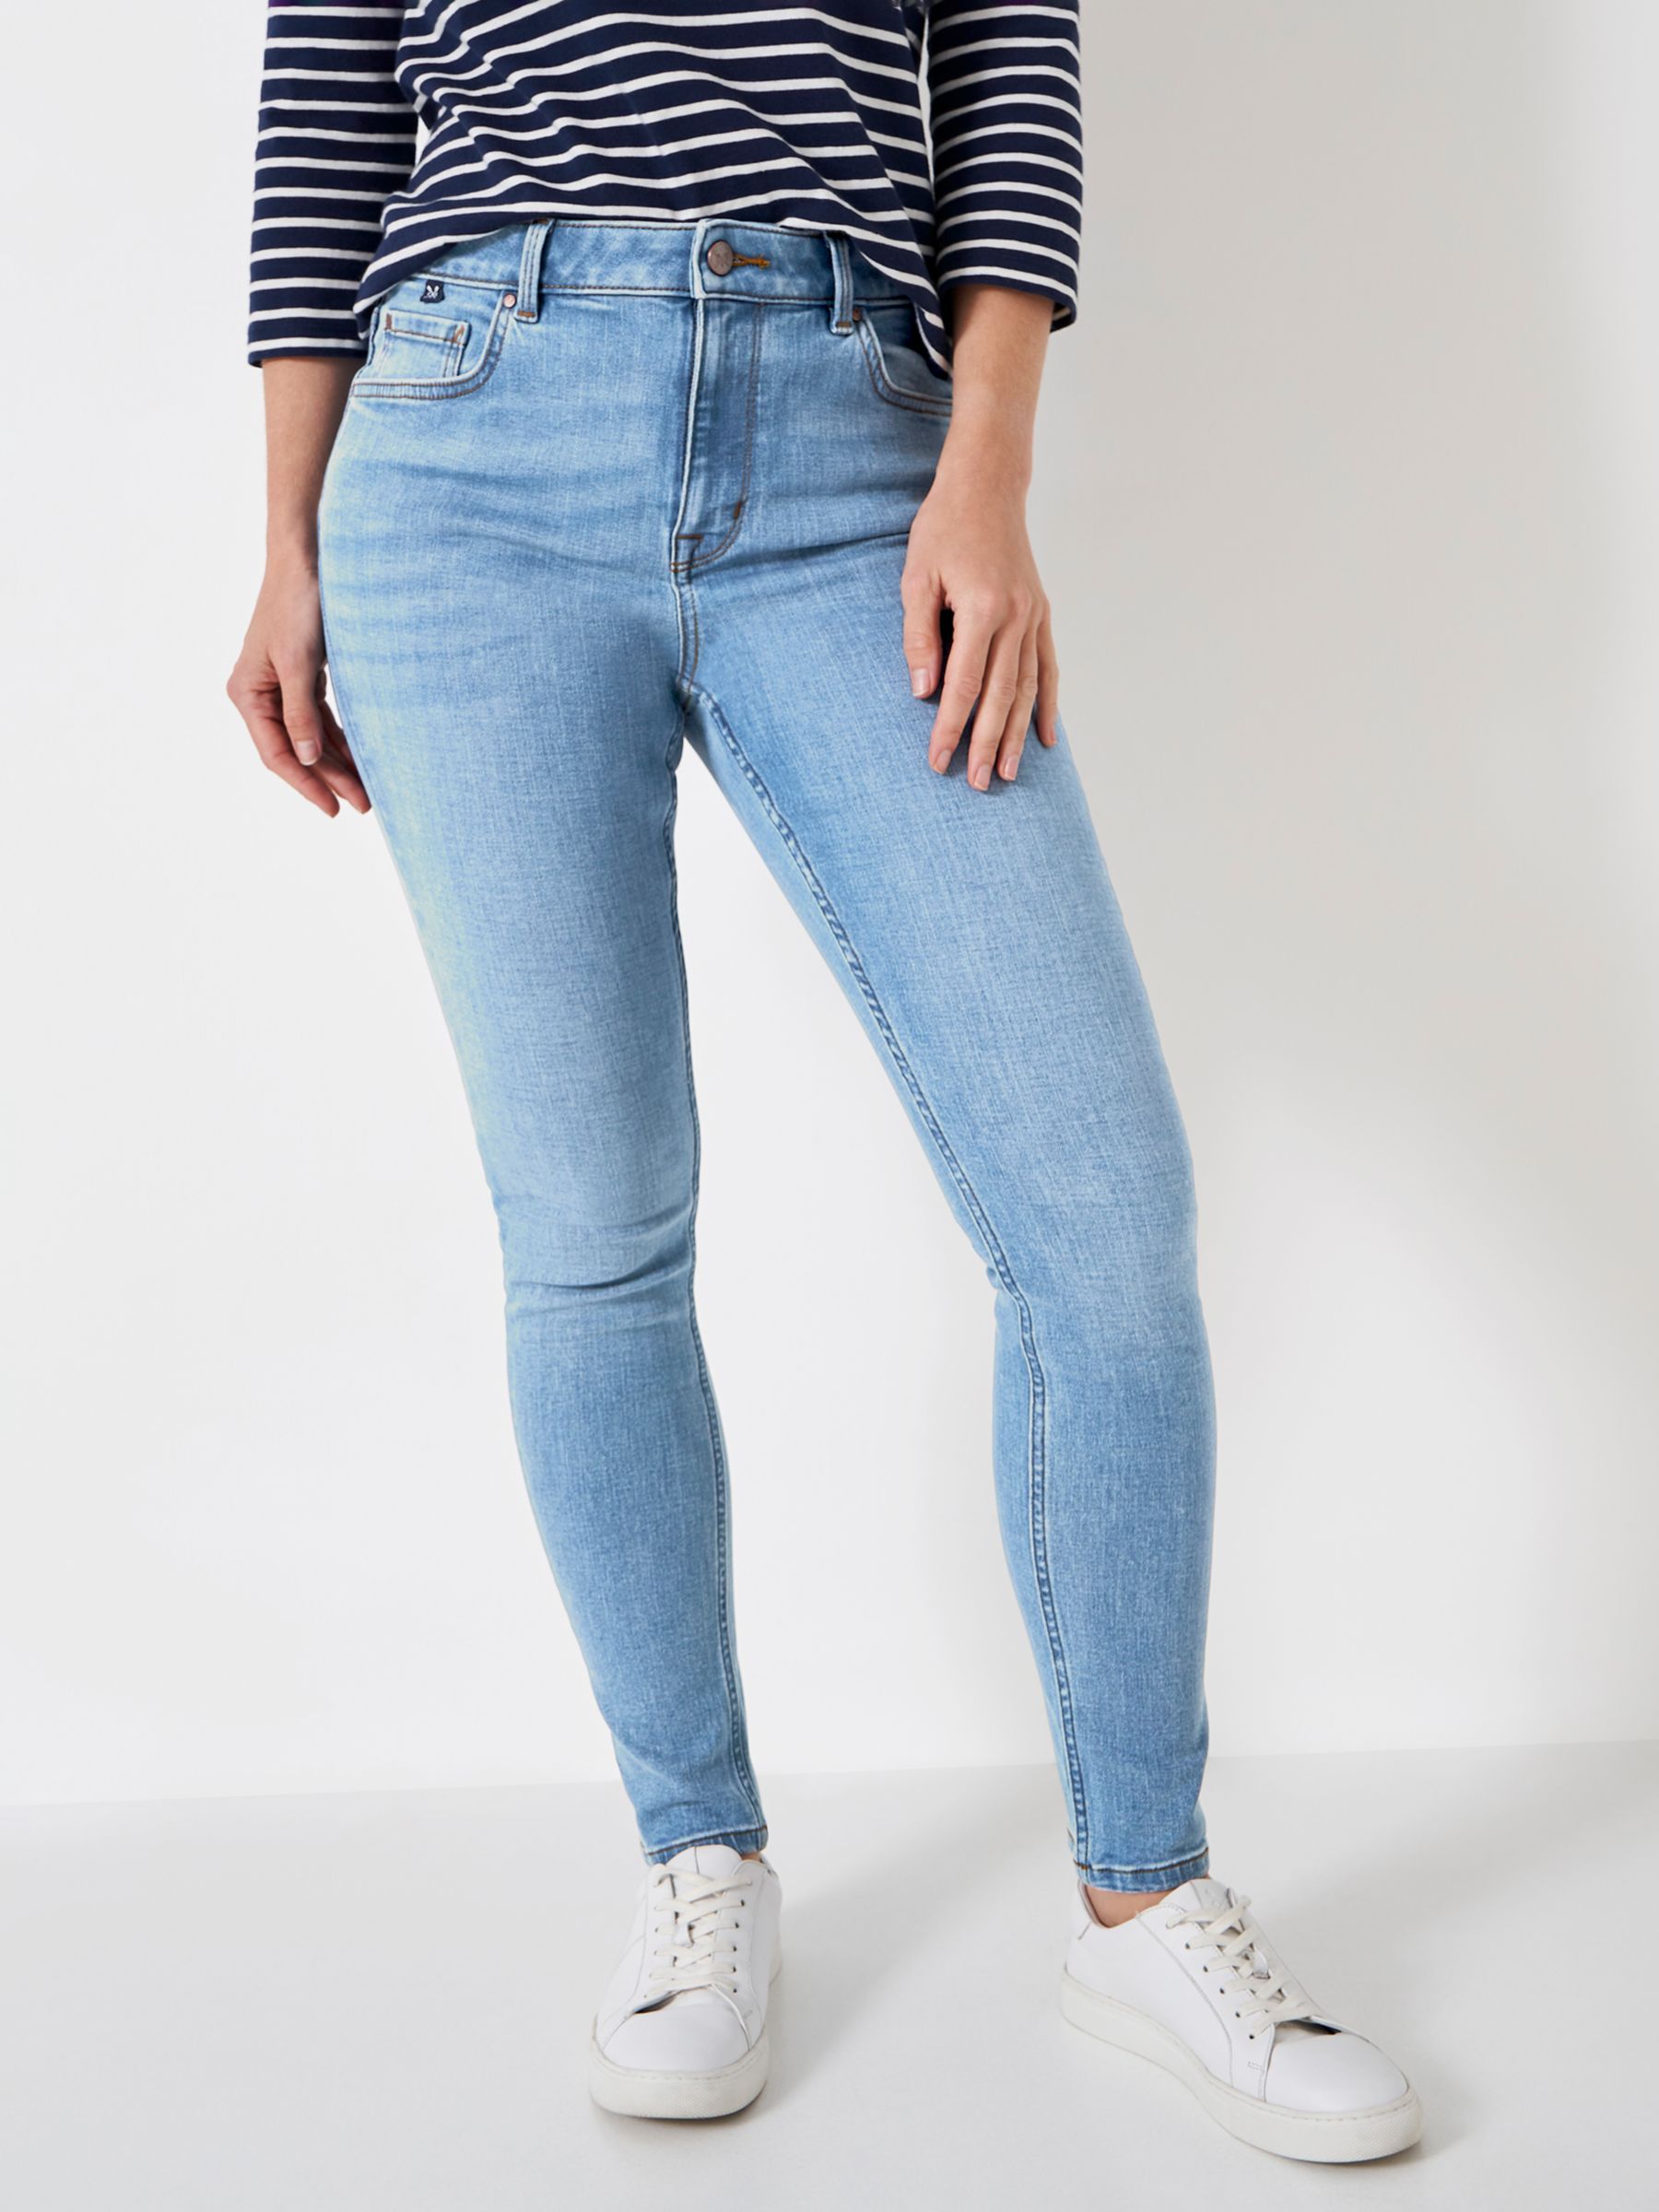 Узкие джинсы Crew Clothing, легкая стирка цена и фото